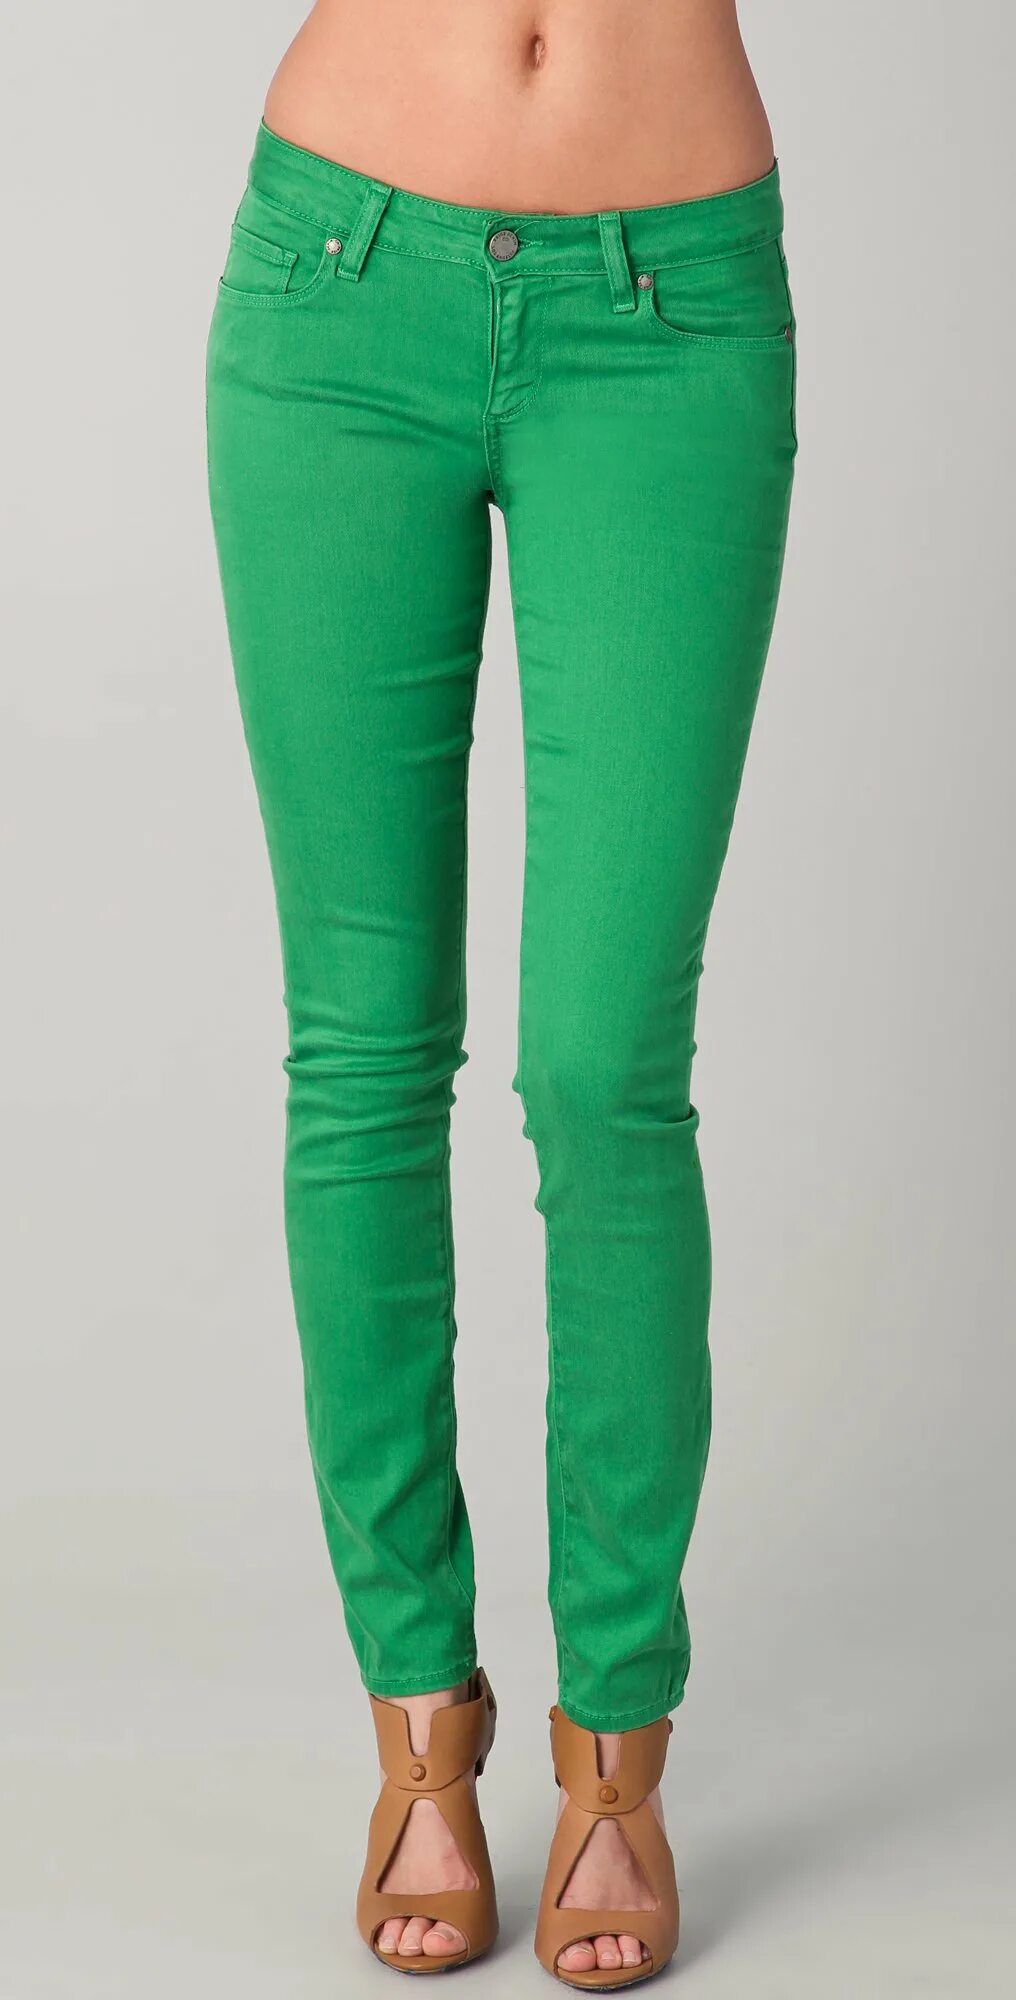 Джинса зеленая купить. Цветные джинсы женские. Салатовые джинсы. Зеленые джинсы. Салатовые джинсы женские.